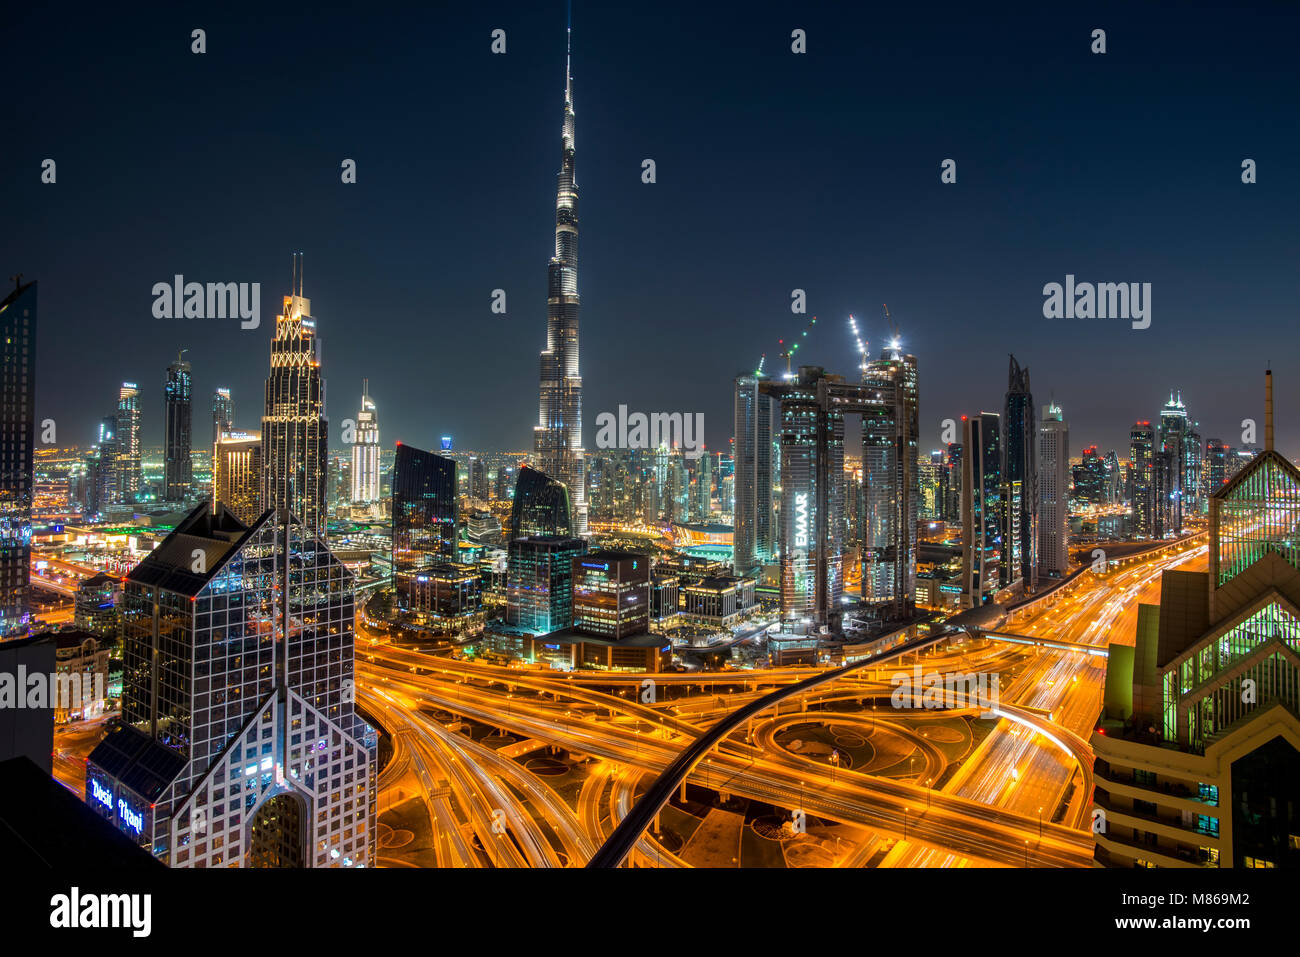 Stadtansichten durch Tag und Nacht, mit Singapur oder Dubai. Für Singapur, mit Marina Bay Sands am Hafen. Dubai verfügt über Downtown Dubai. Stockfoto